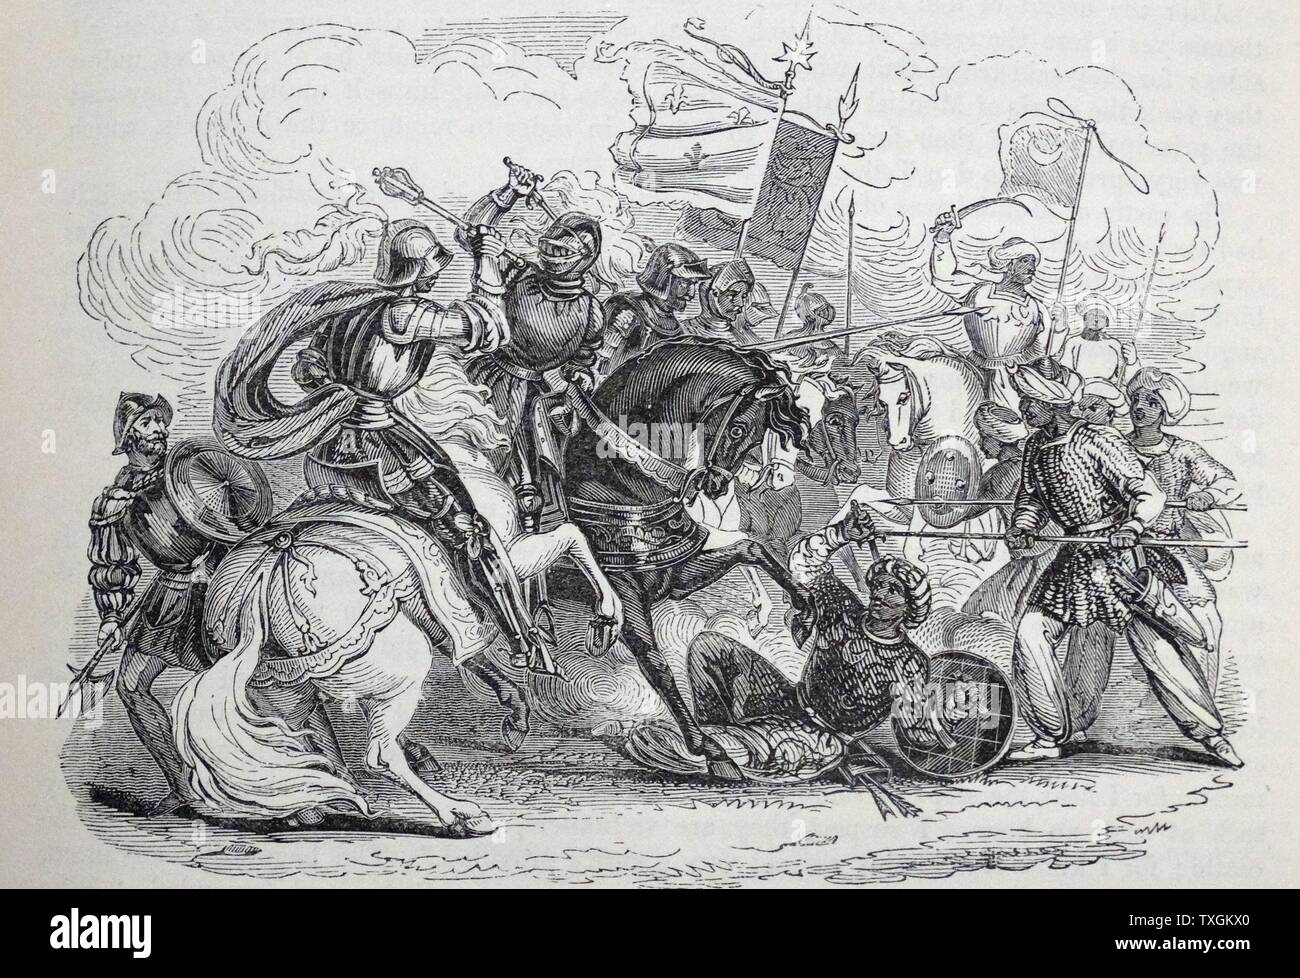 Gravur zeigt eine Szene aus der Schlacht von Montiel, gekämpft zwischen Muño Alfonso und ein Heer von Ritter von Ávila, Segovia und Toledo. Vom 12. Jahrhundert Stockfoto